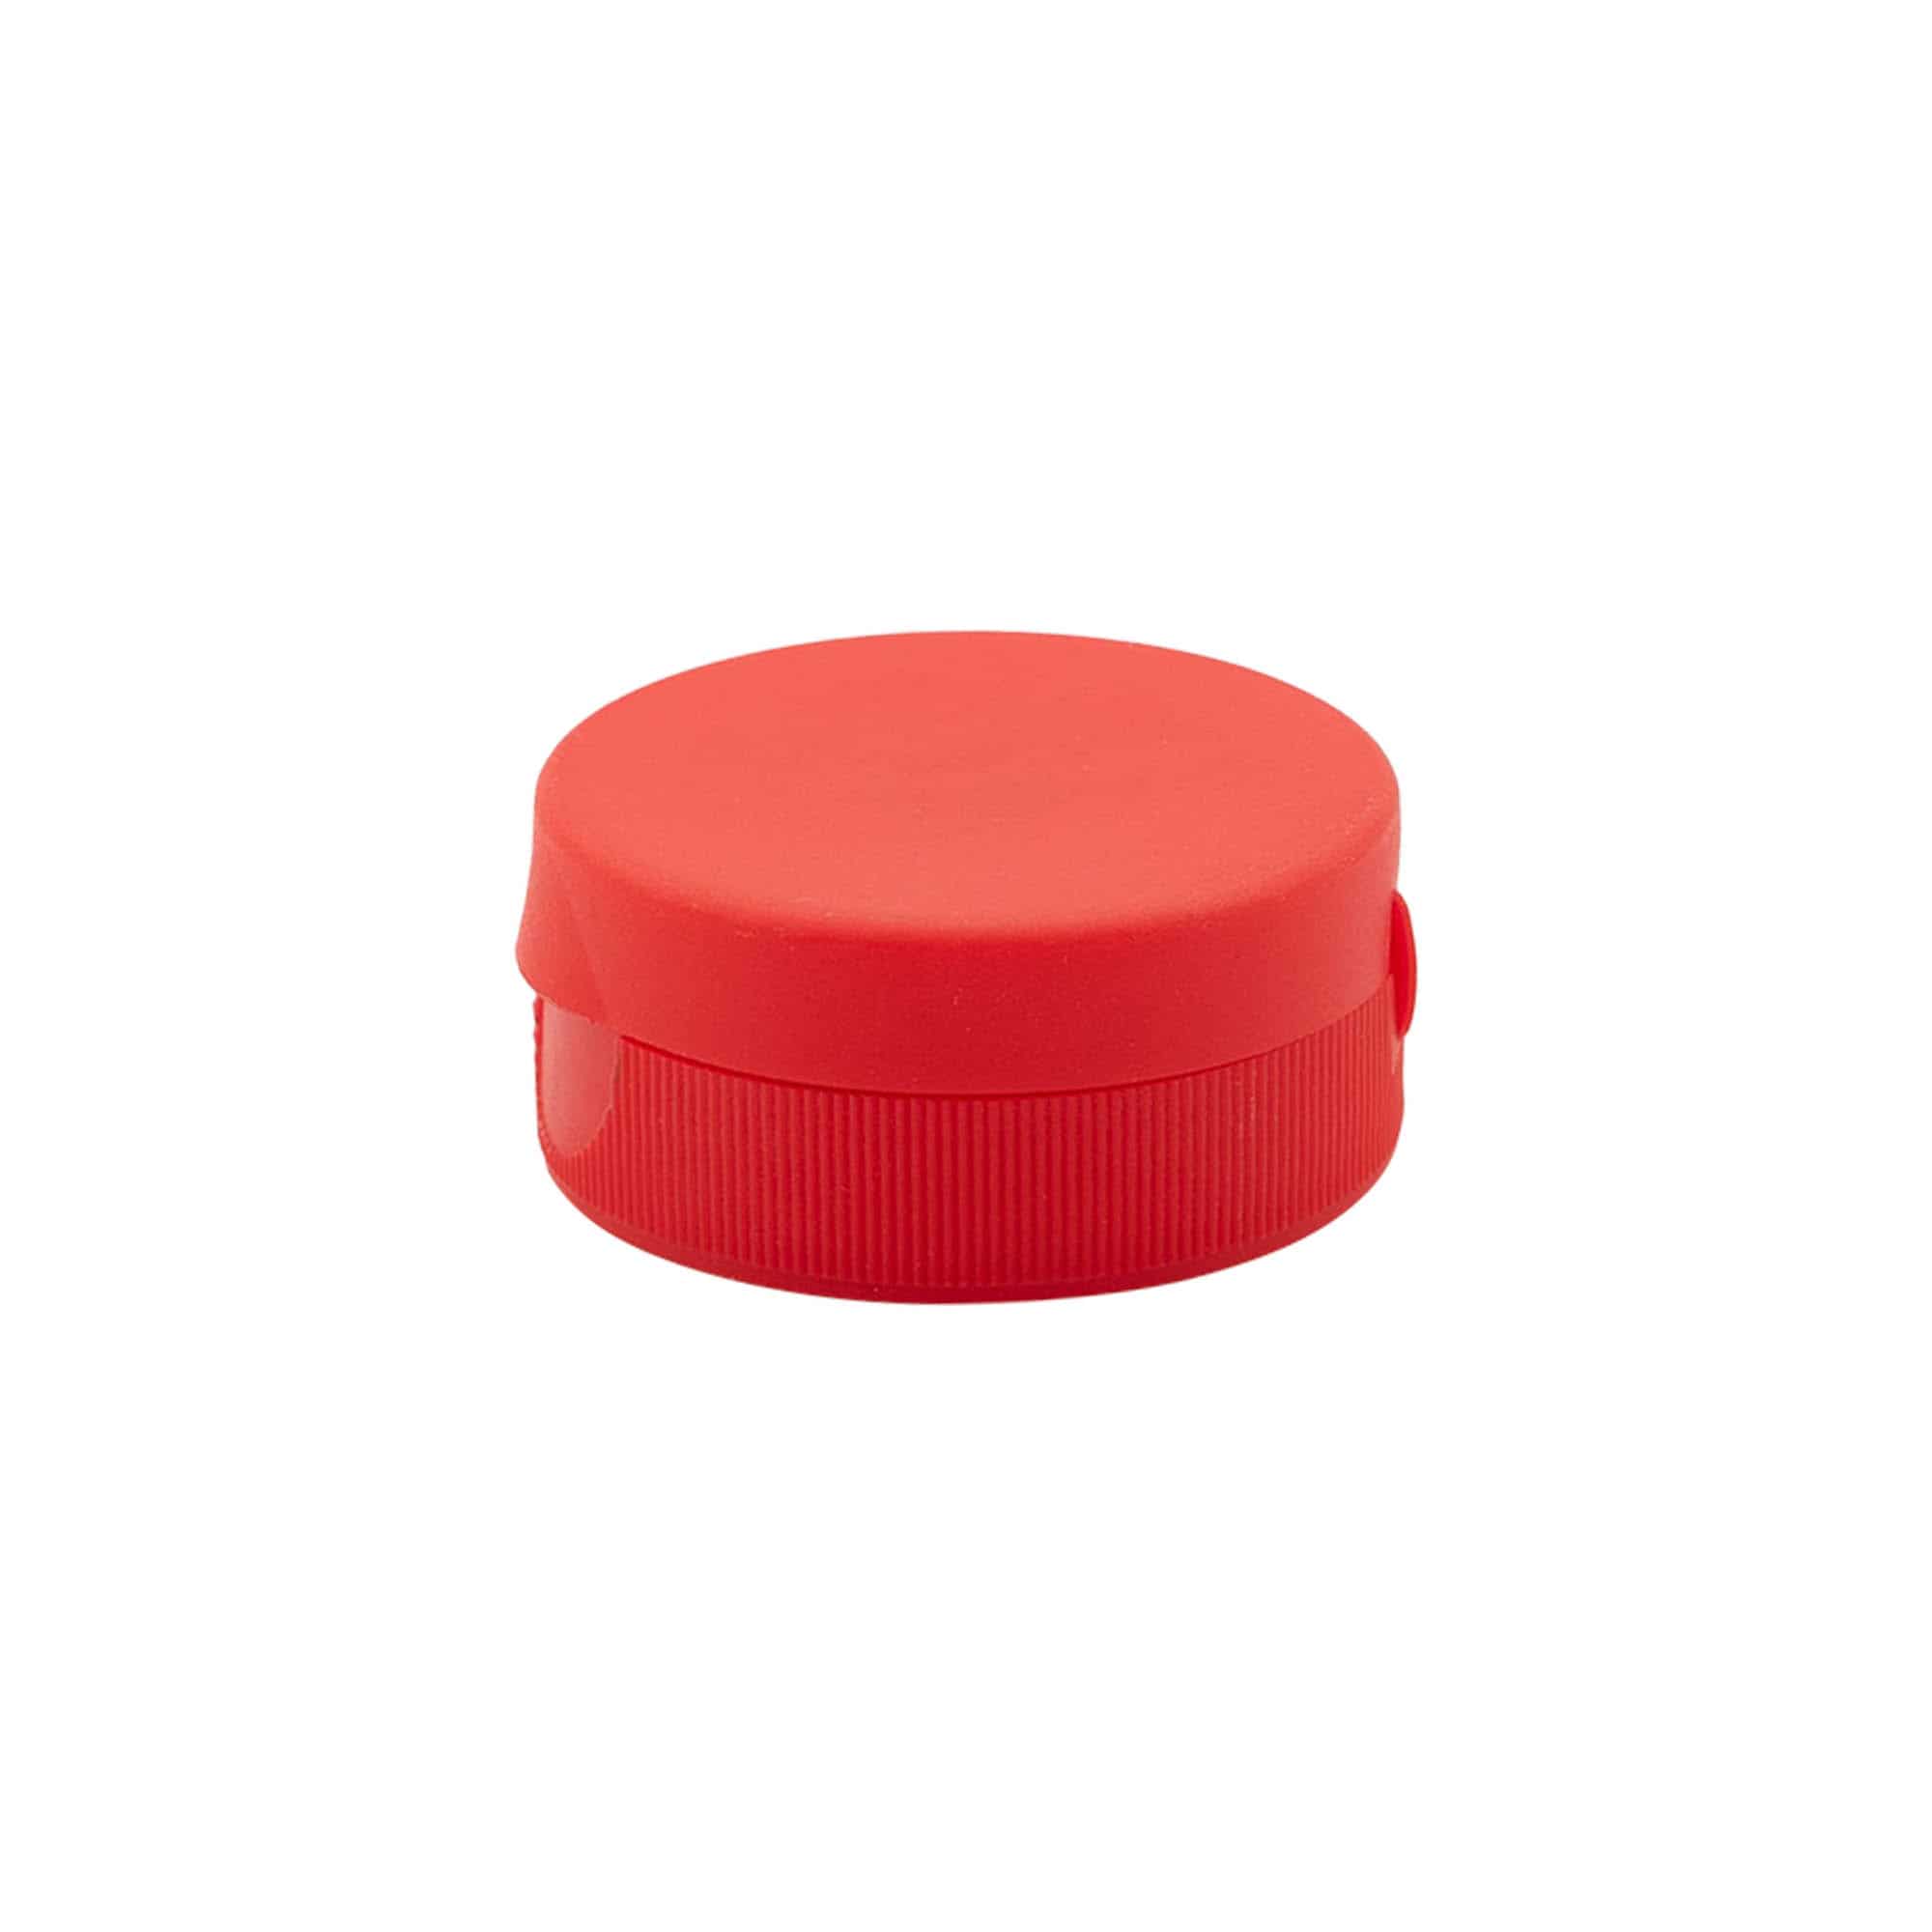 Šroubovací uzávěr s výklopnou krytkou, plast PP, červený, pro ústí: GPI 38/400